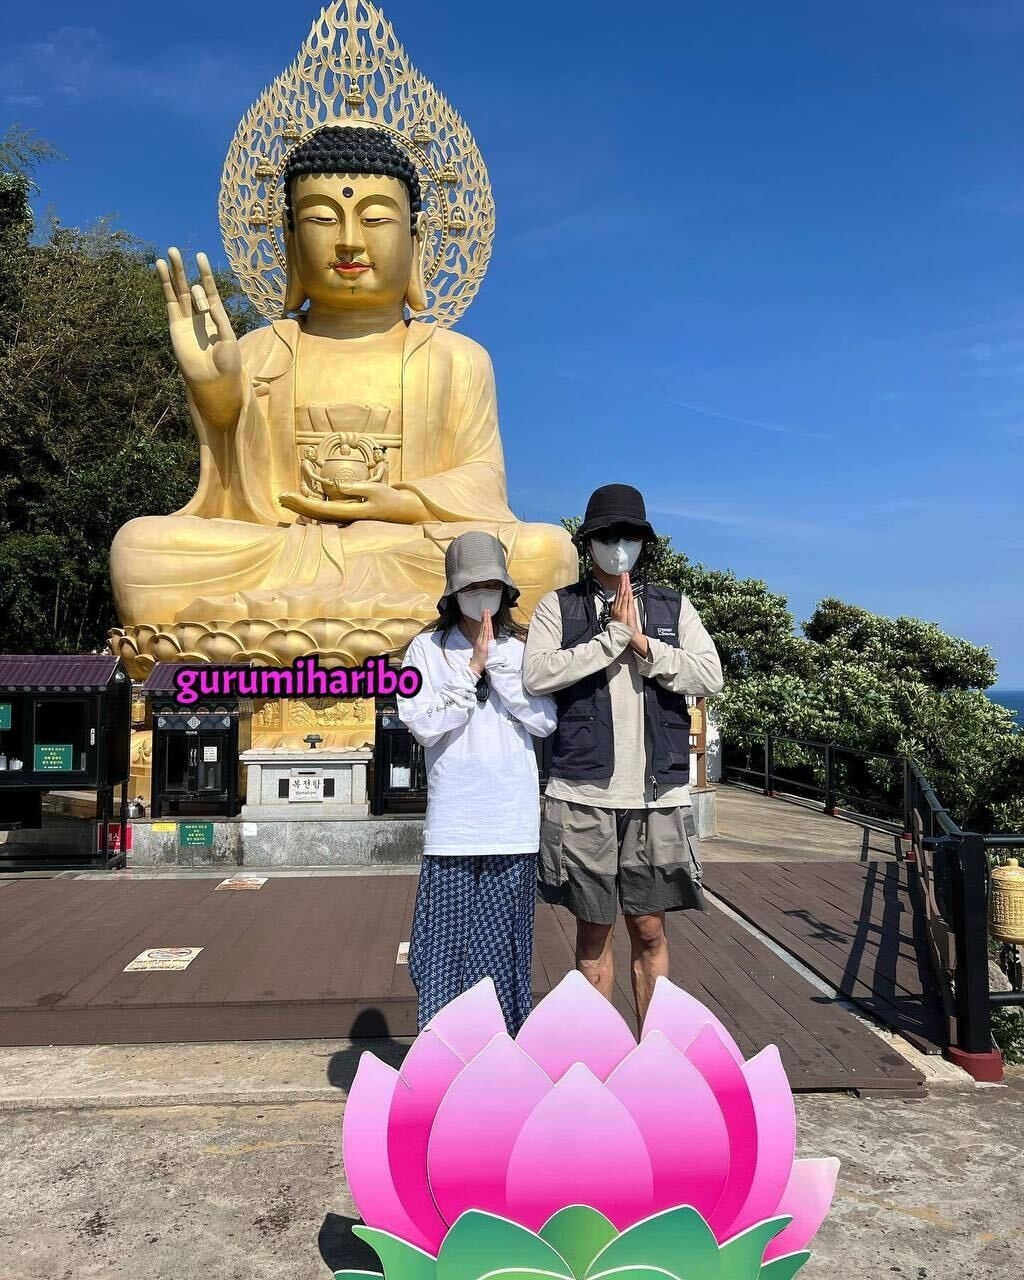 Lộ ảnh hẹn hò ‘cực tình’ của V (BTS) và Jennie (BlackPink) tại đảo Jeju?